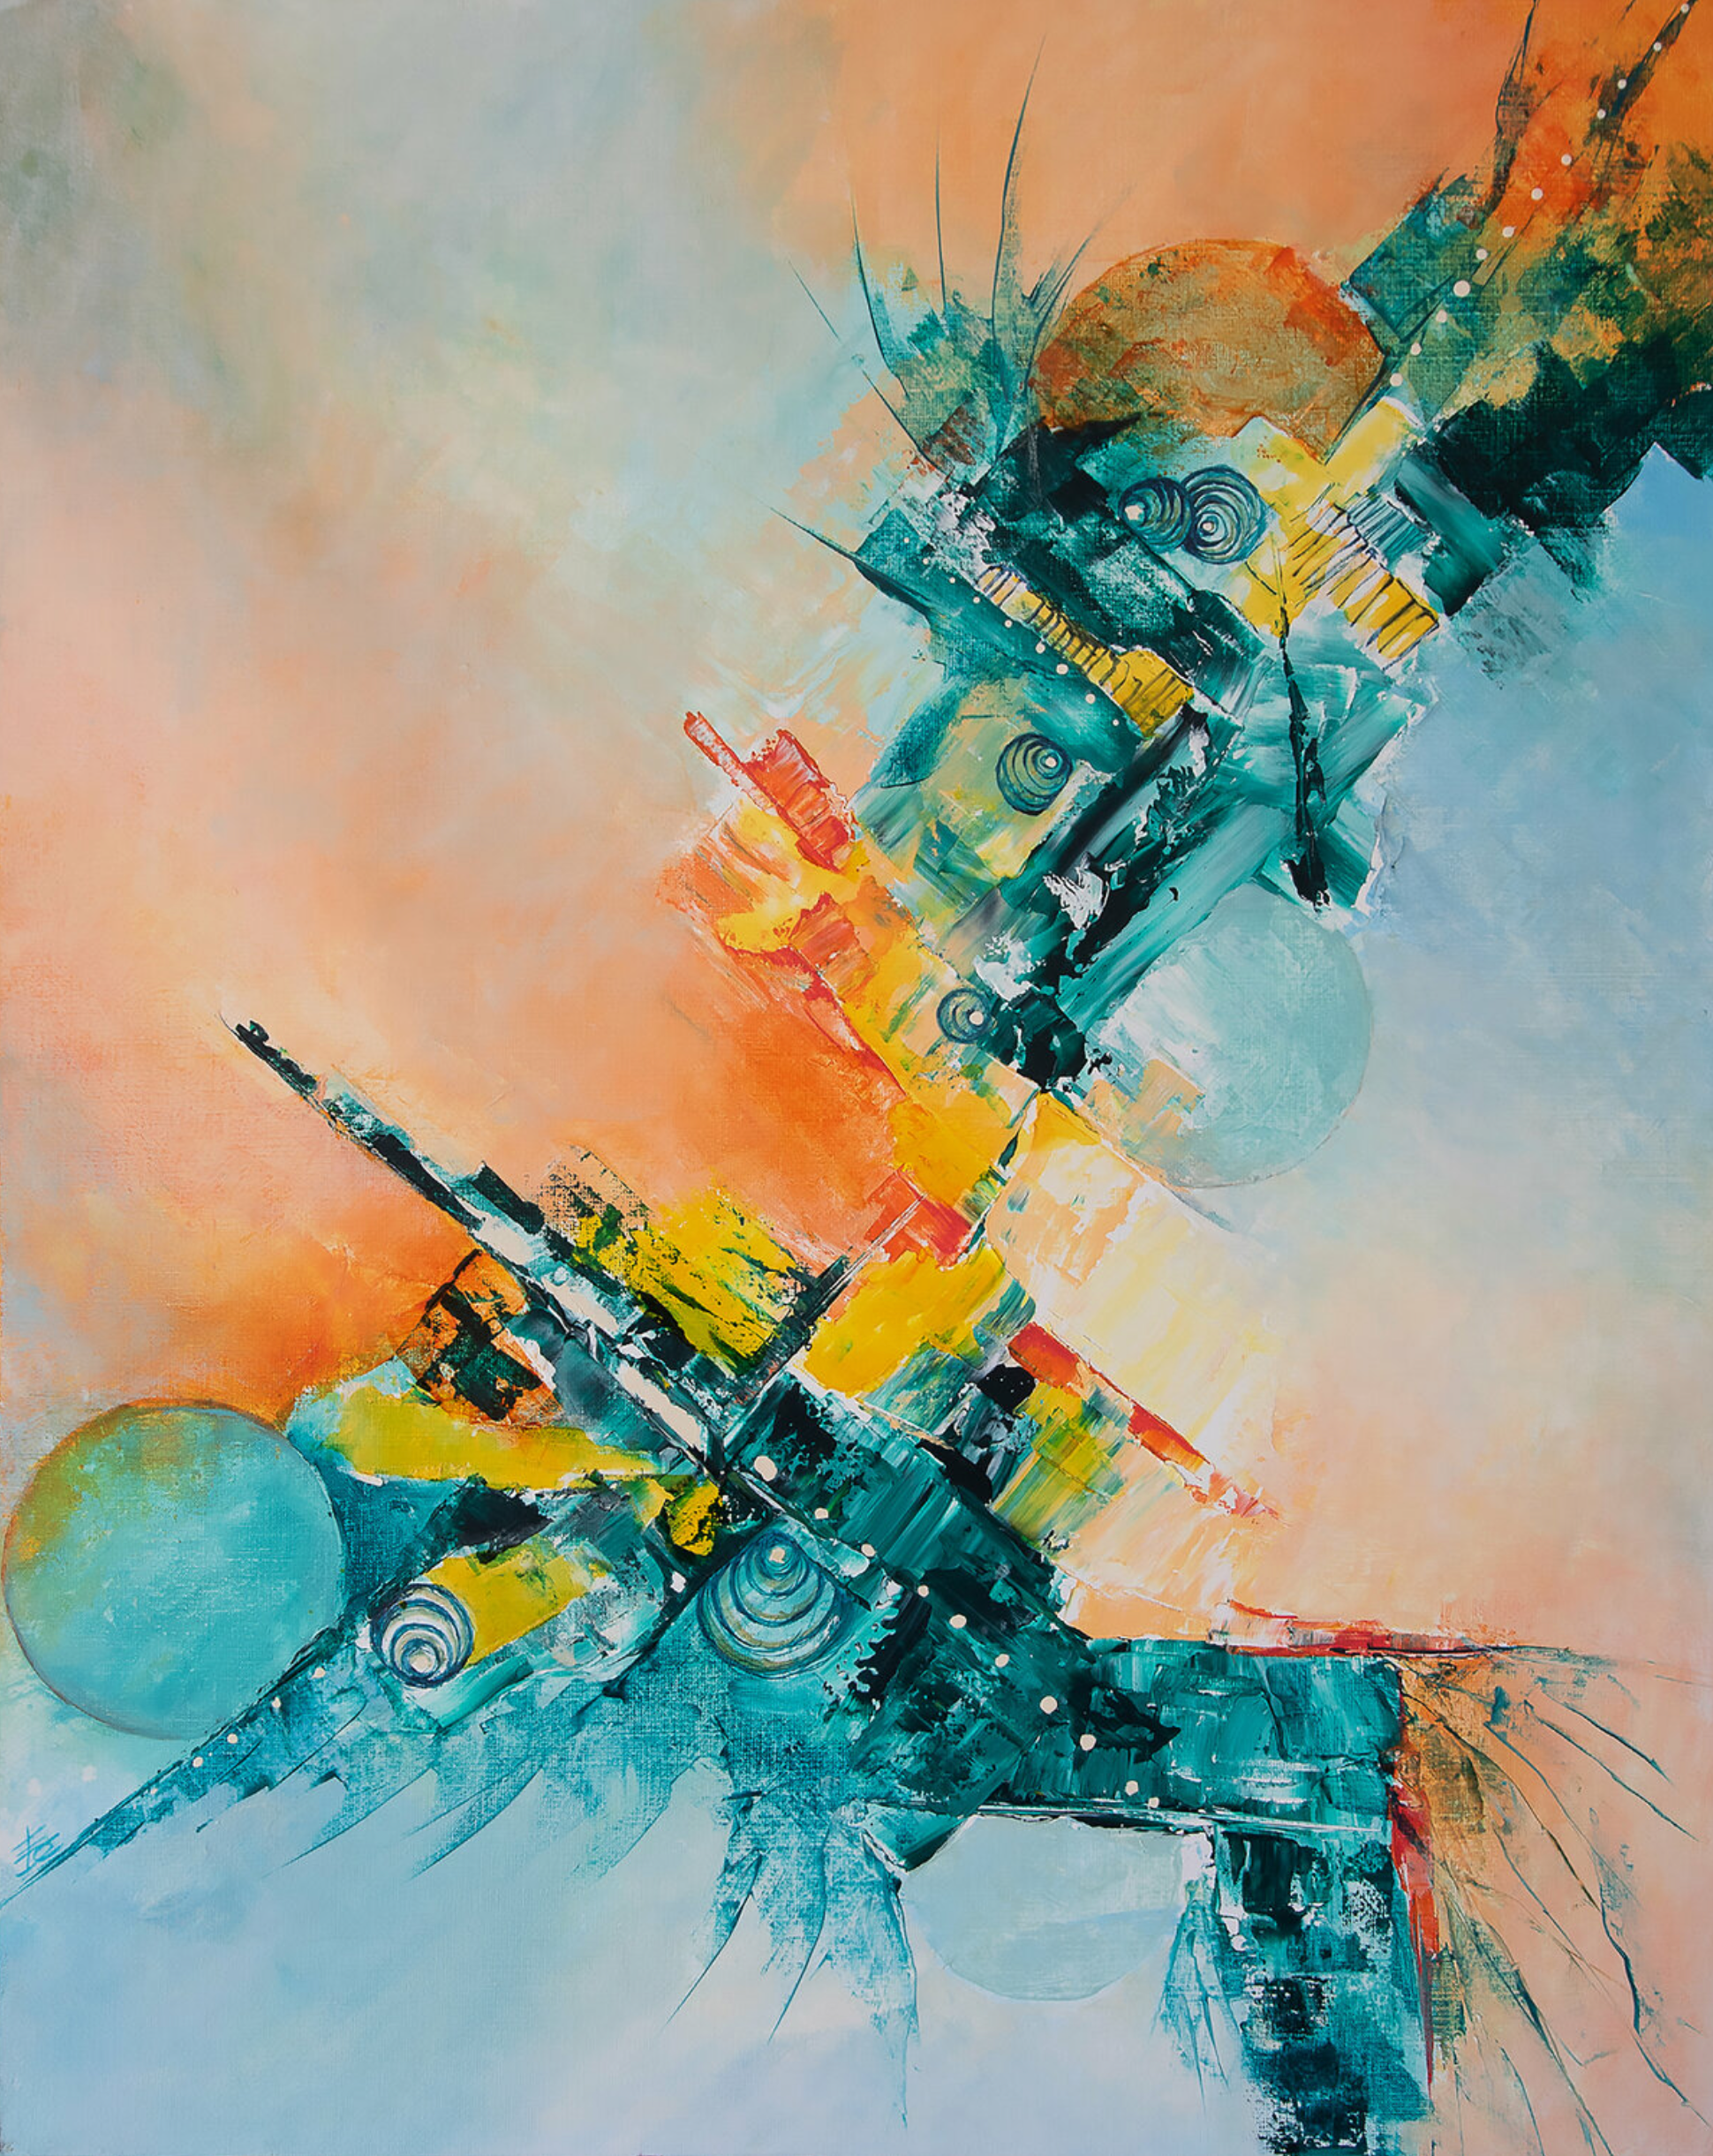 Edenspace" de Françoise Dugourd-Caput, acrílico abstracto y óleo sobre lienzo, pintura, un cuchillo, un espacio onírico o un paisaje extraterrestre. La luz acompaña el viaje en medio de un caos de esferas y formas geométricas que se abren a un espacio portador de esperanza.